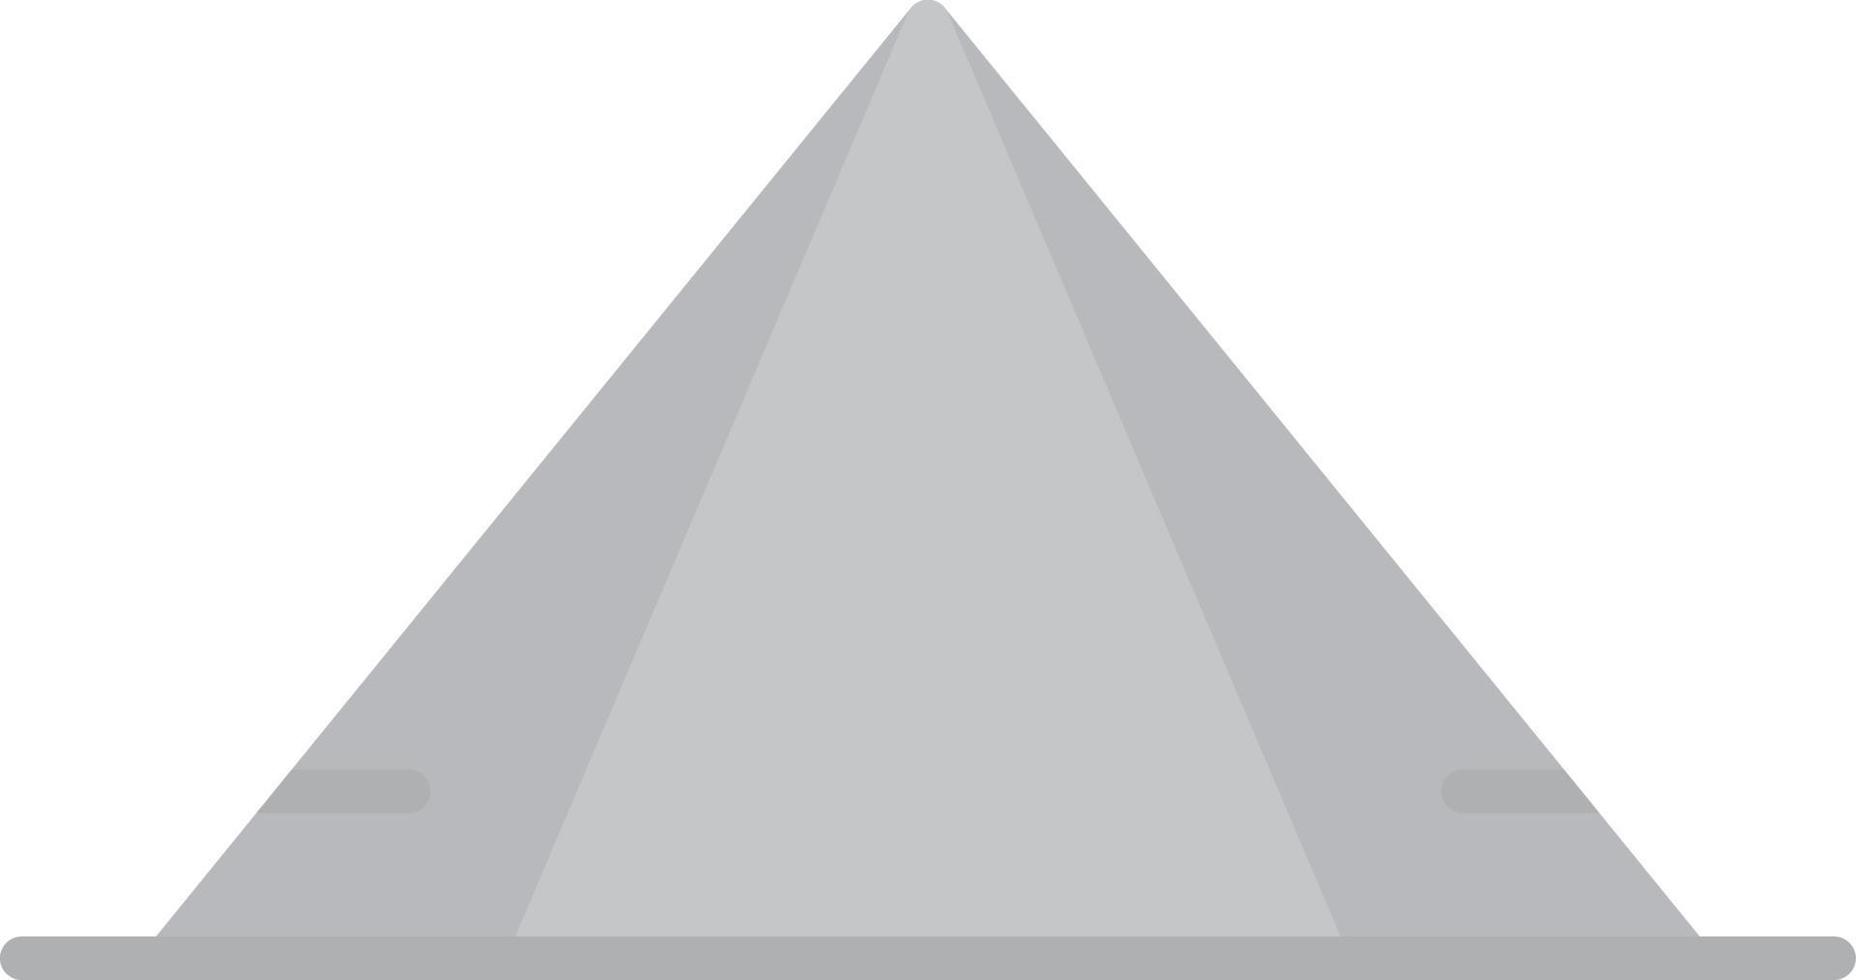 scala di grigi piatta a piramide vettore